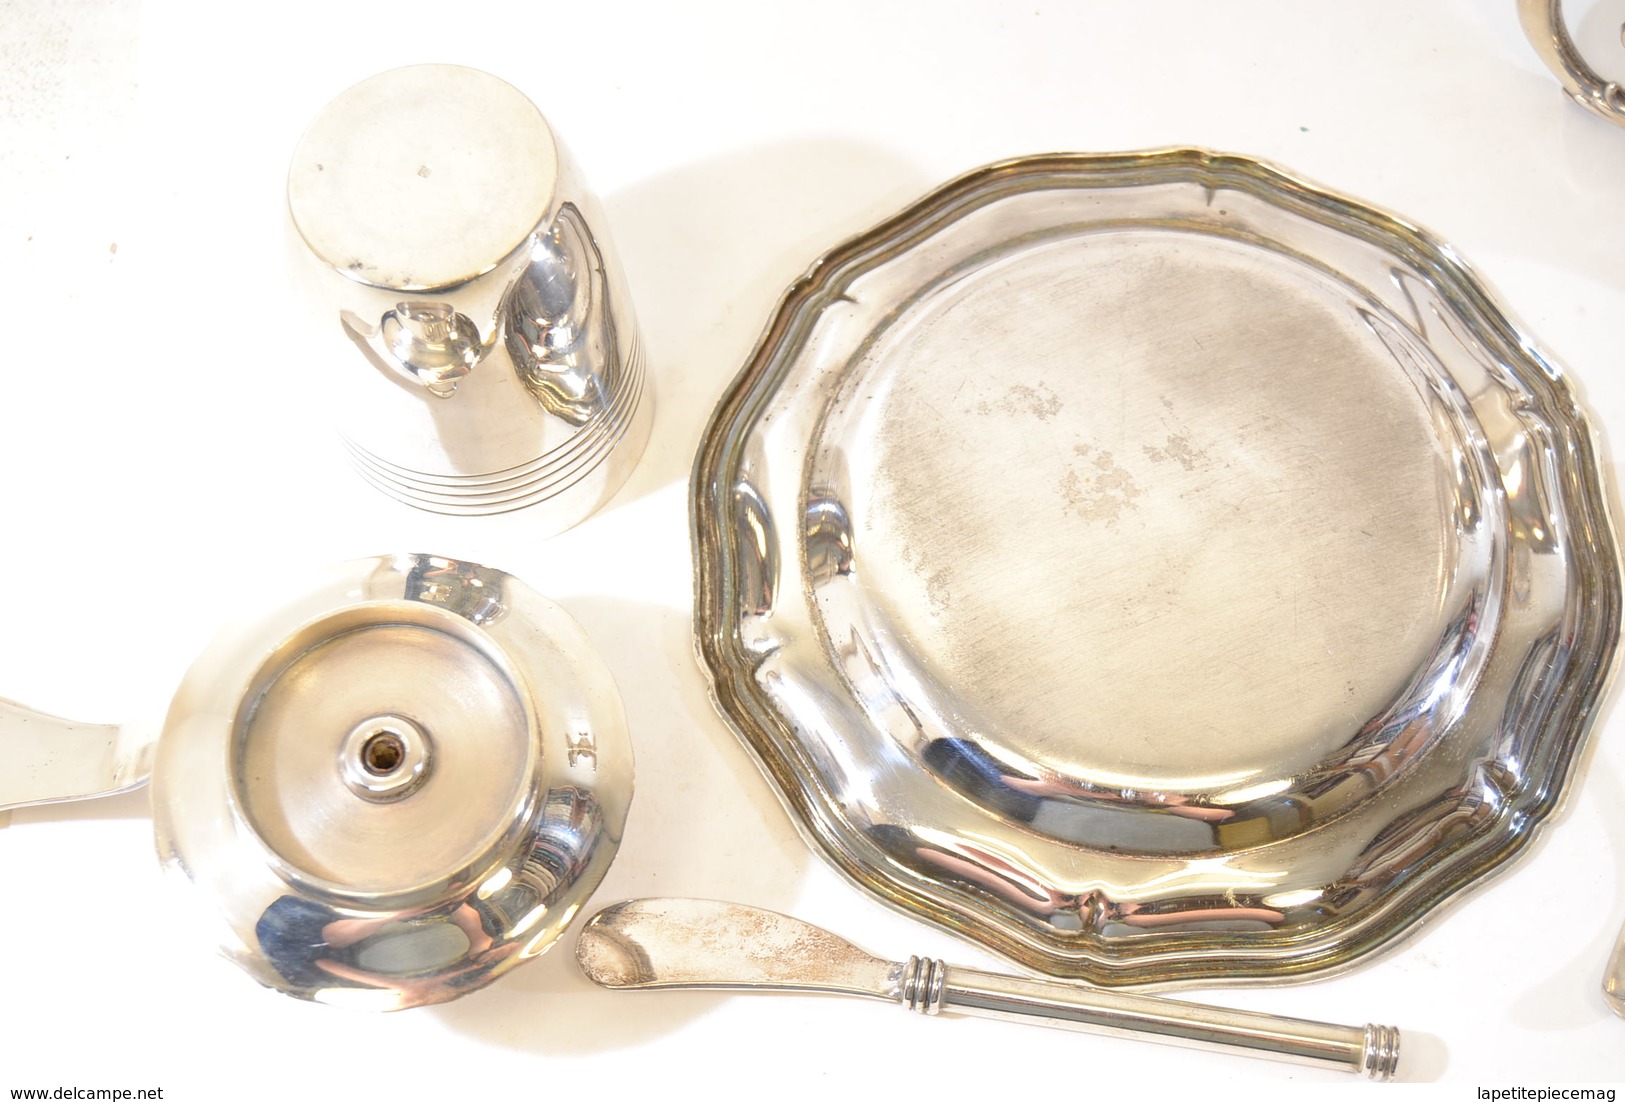 Elements service de table en métal argenté ou métal blanc. Art de la table